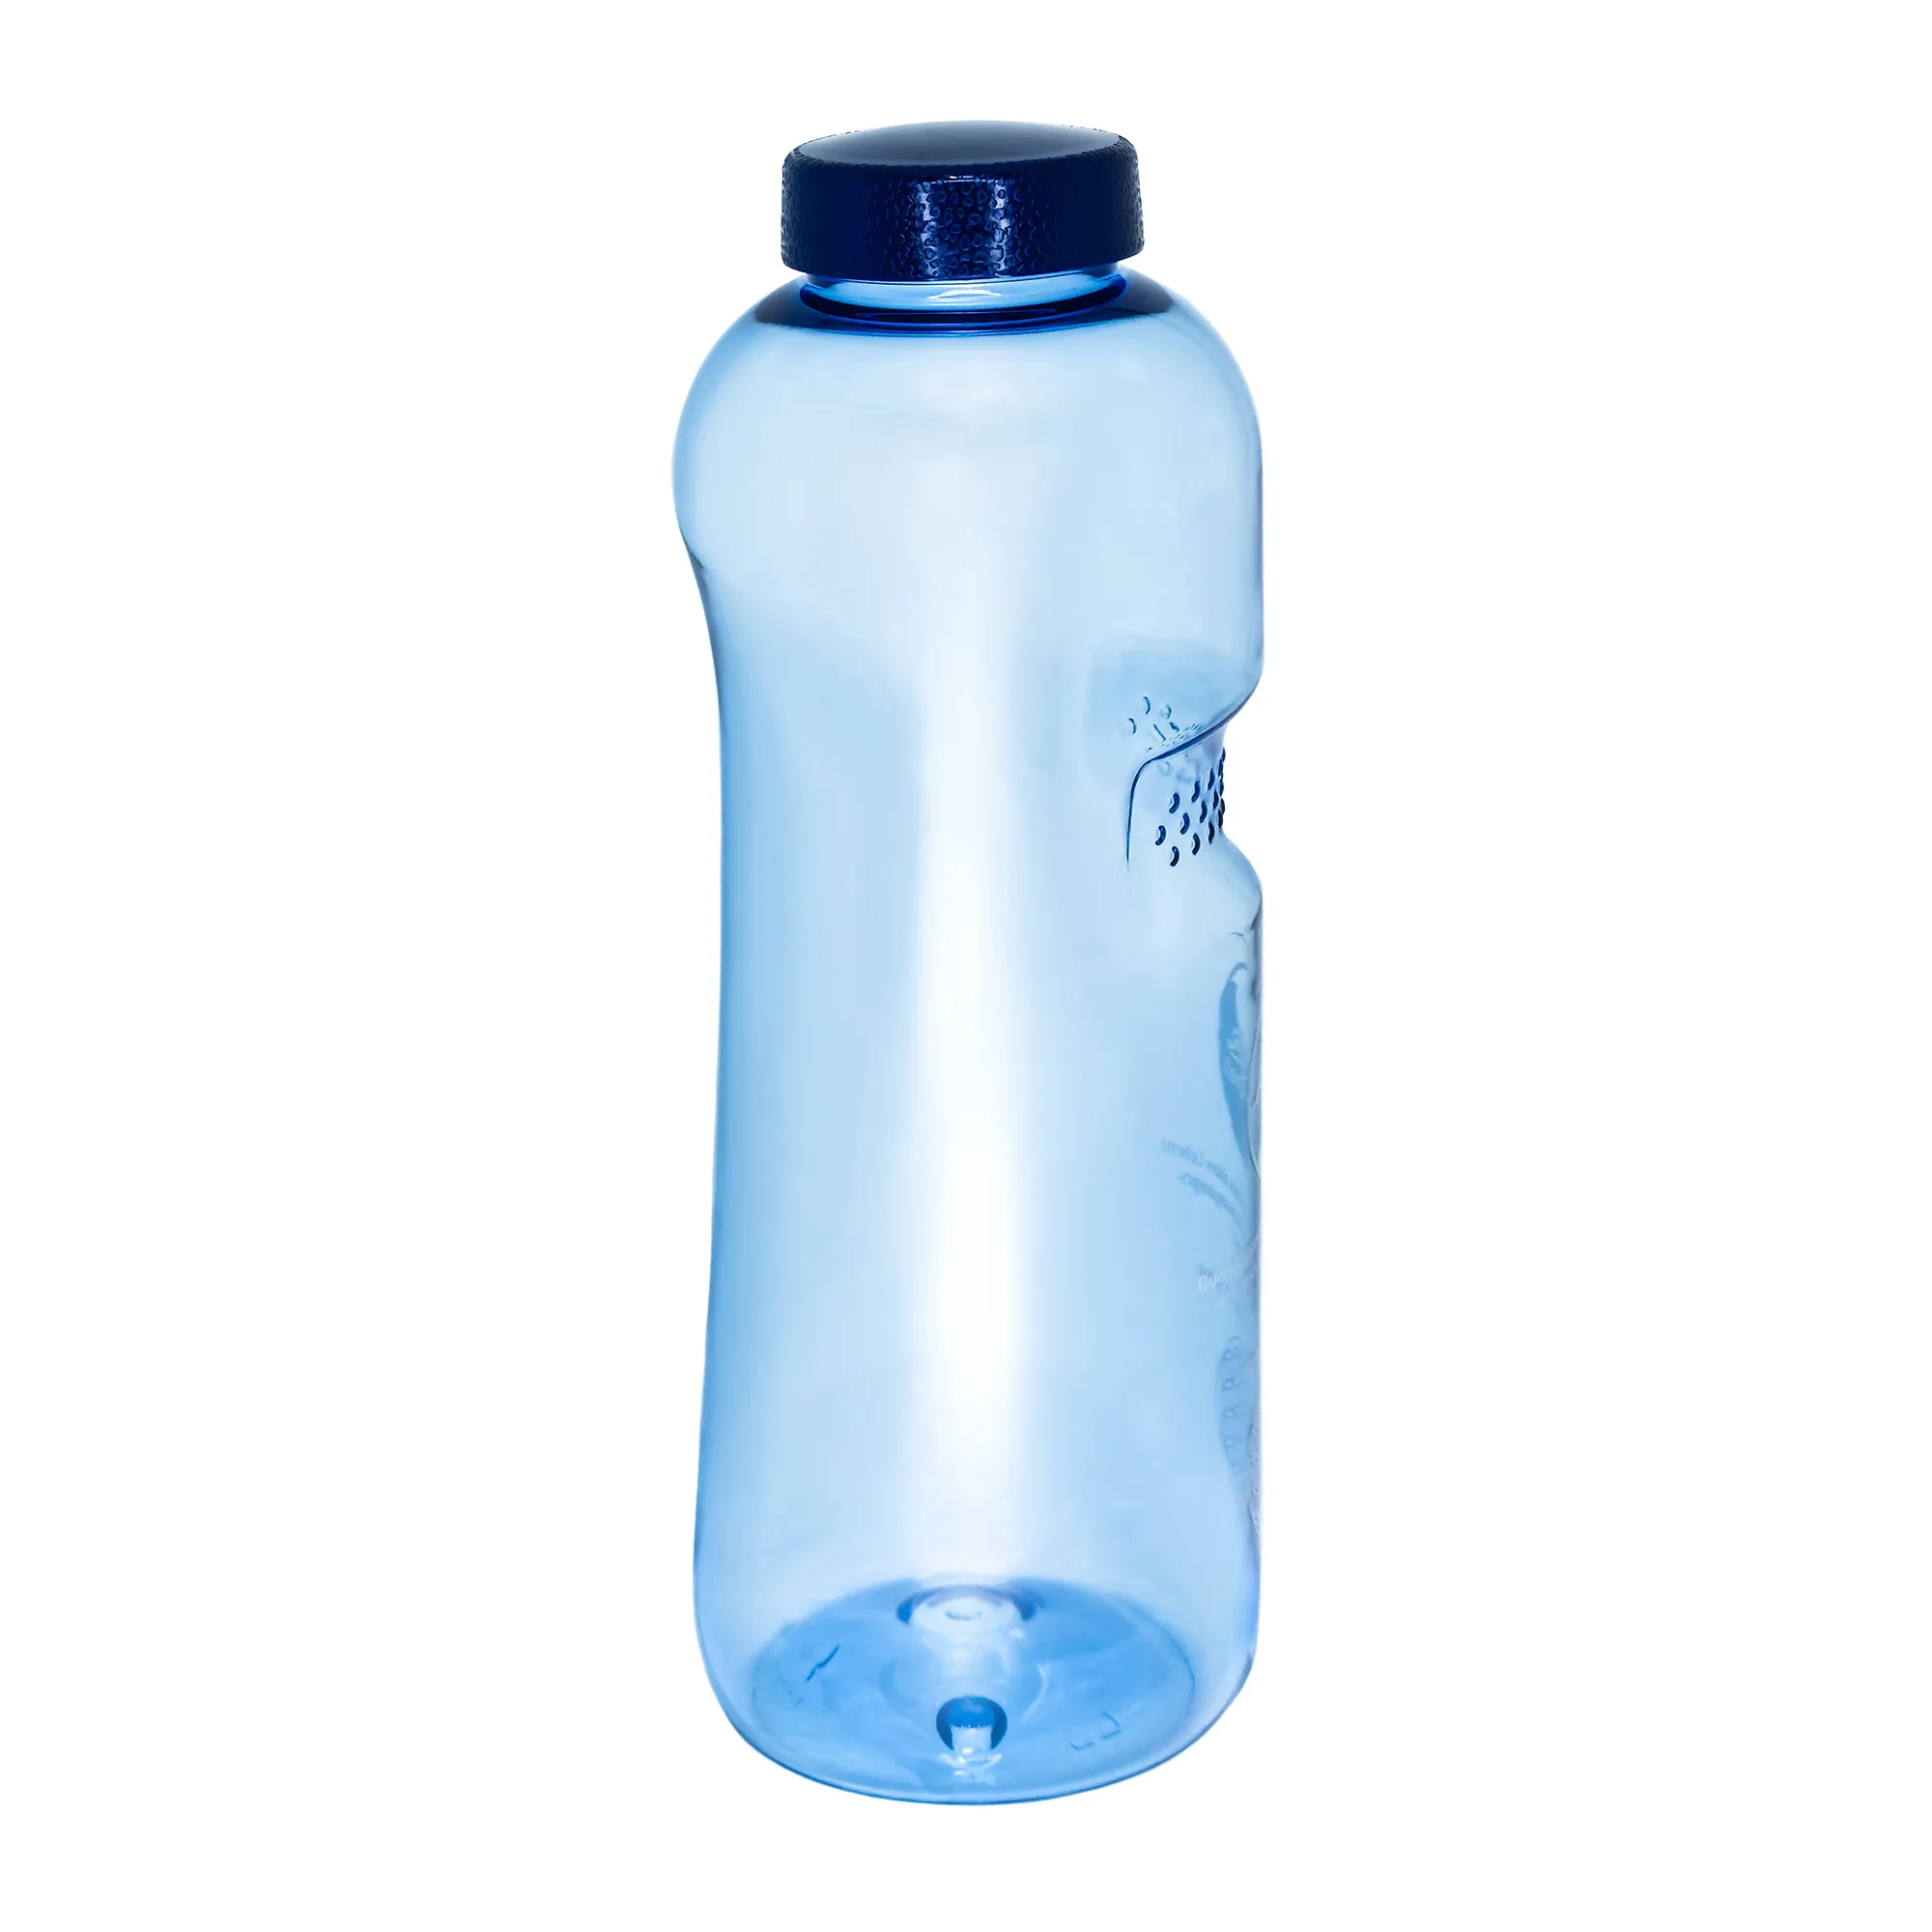 Zu sehen ist eine blaue Tritan Trinkflasche Grip mit dunkelblauem Schraubdeckel vor weißem Hintergrund. Man schaut schräg auf die Rückseite der Flasche und sieht dass sie vorne eine Einbuchtung mit Noppen für den Daumen hat.